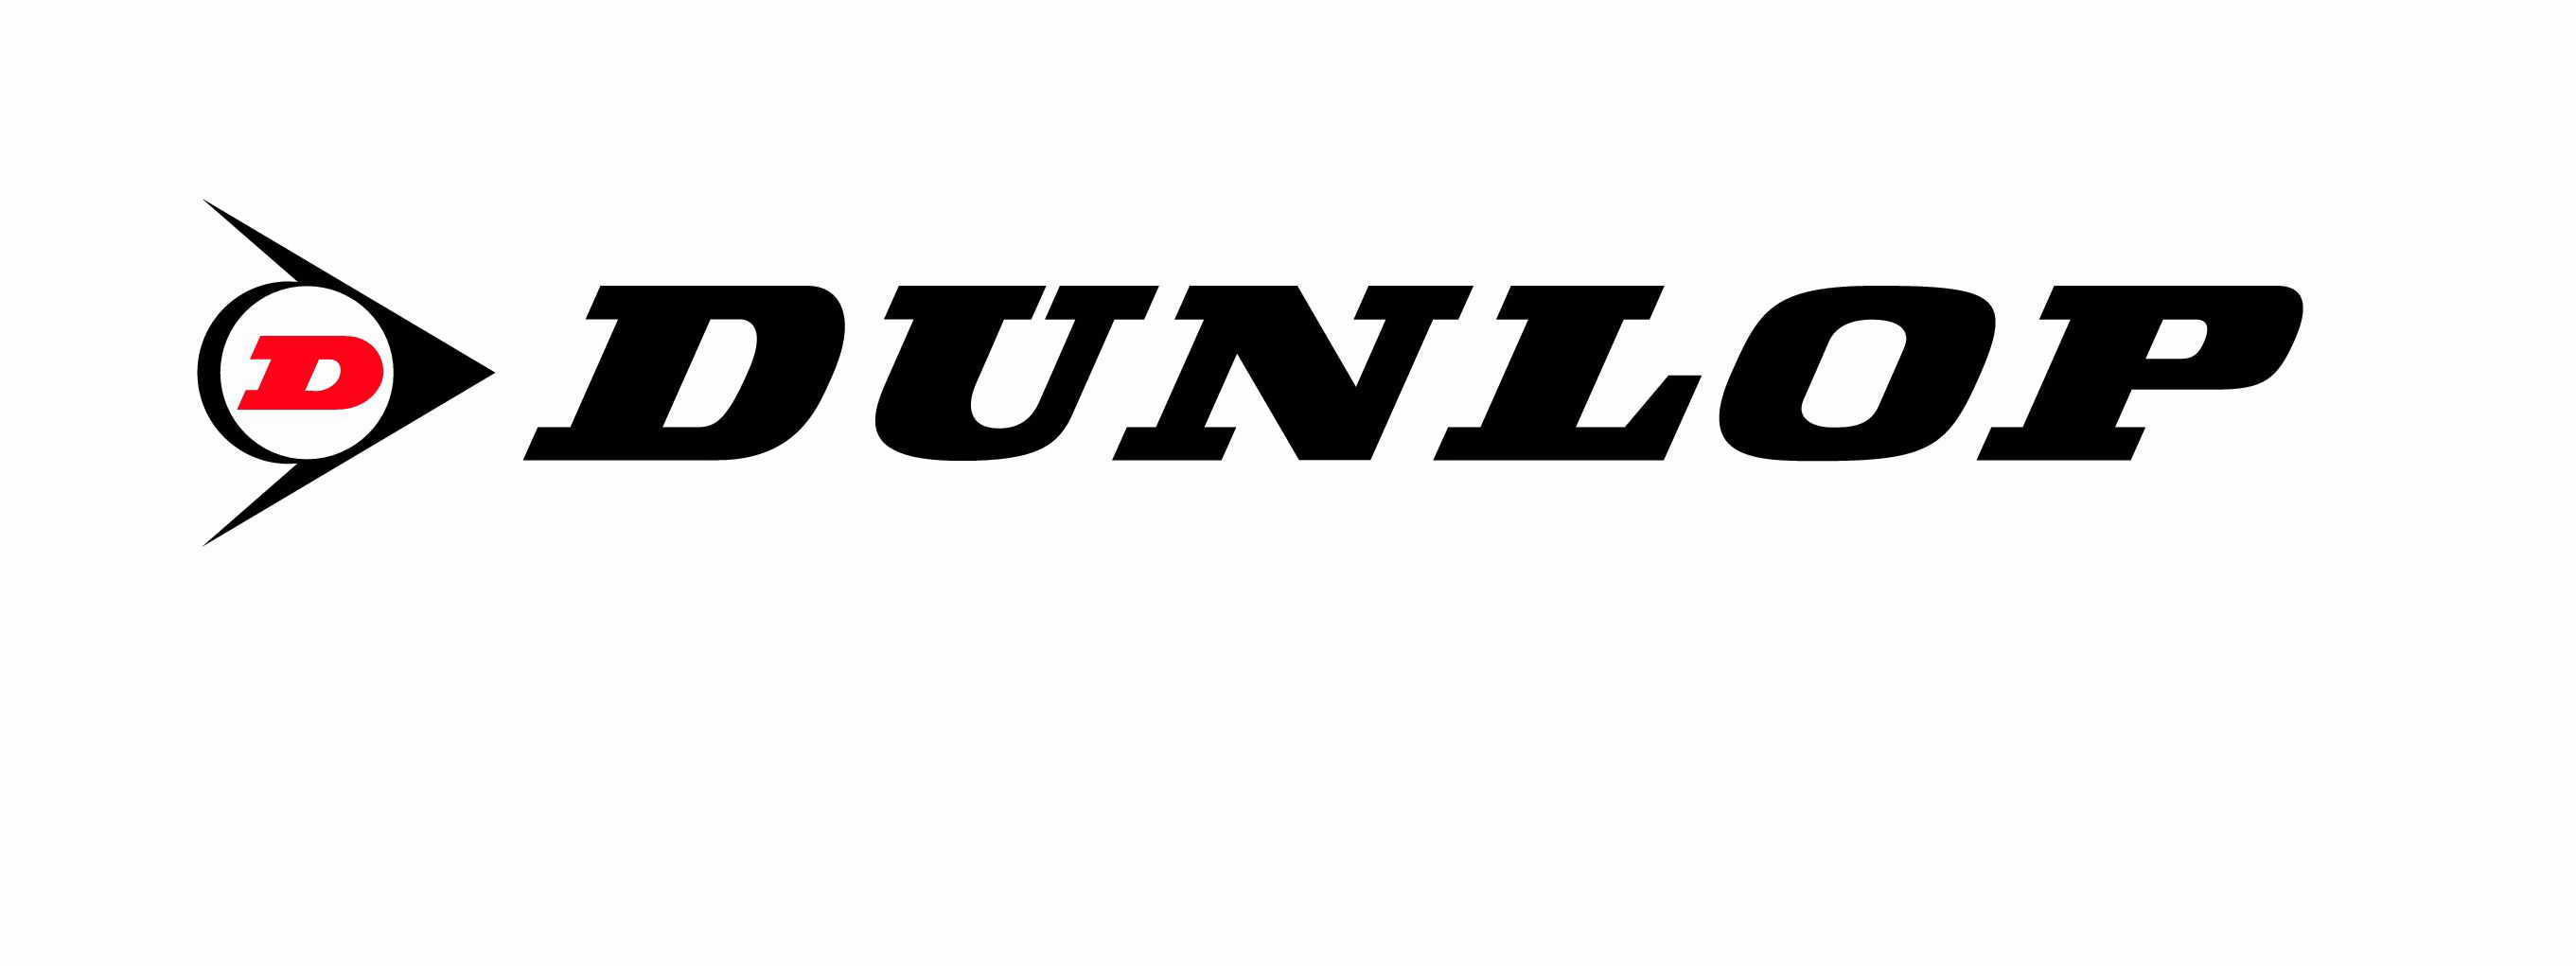 Dunlop logo